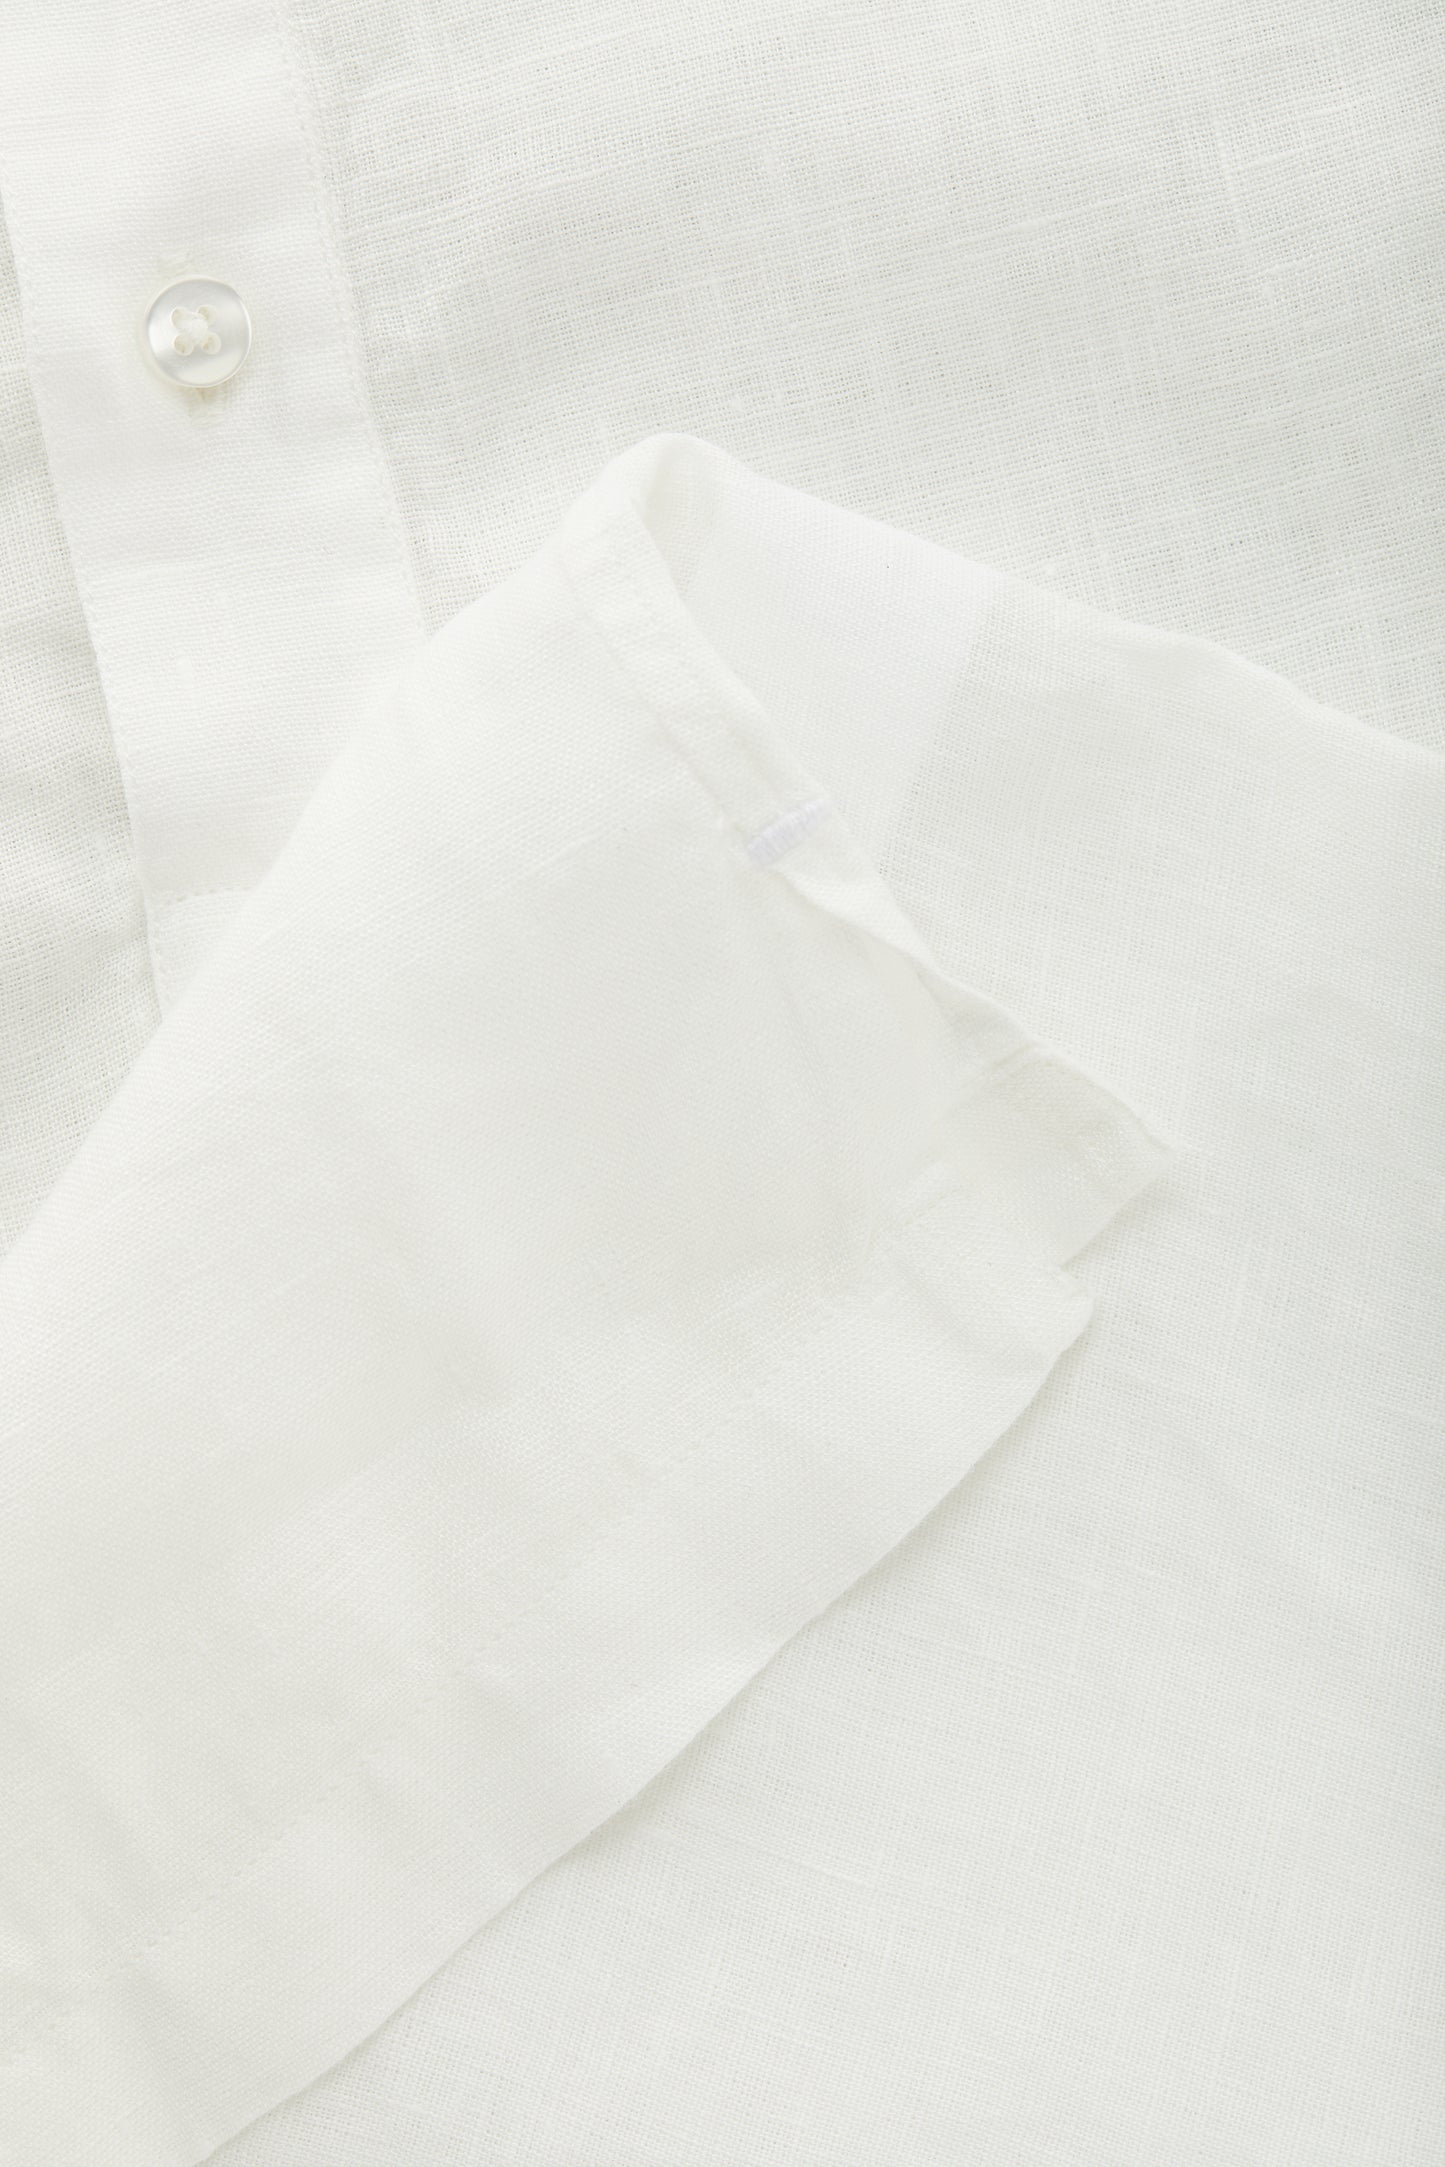 Linen Short Sleeve Pop-Over White